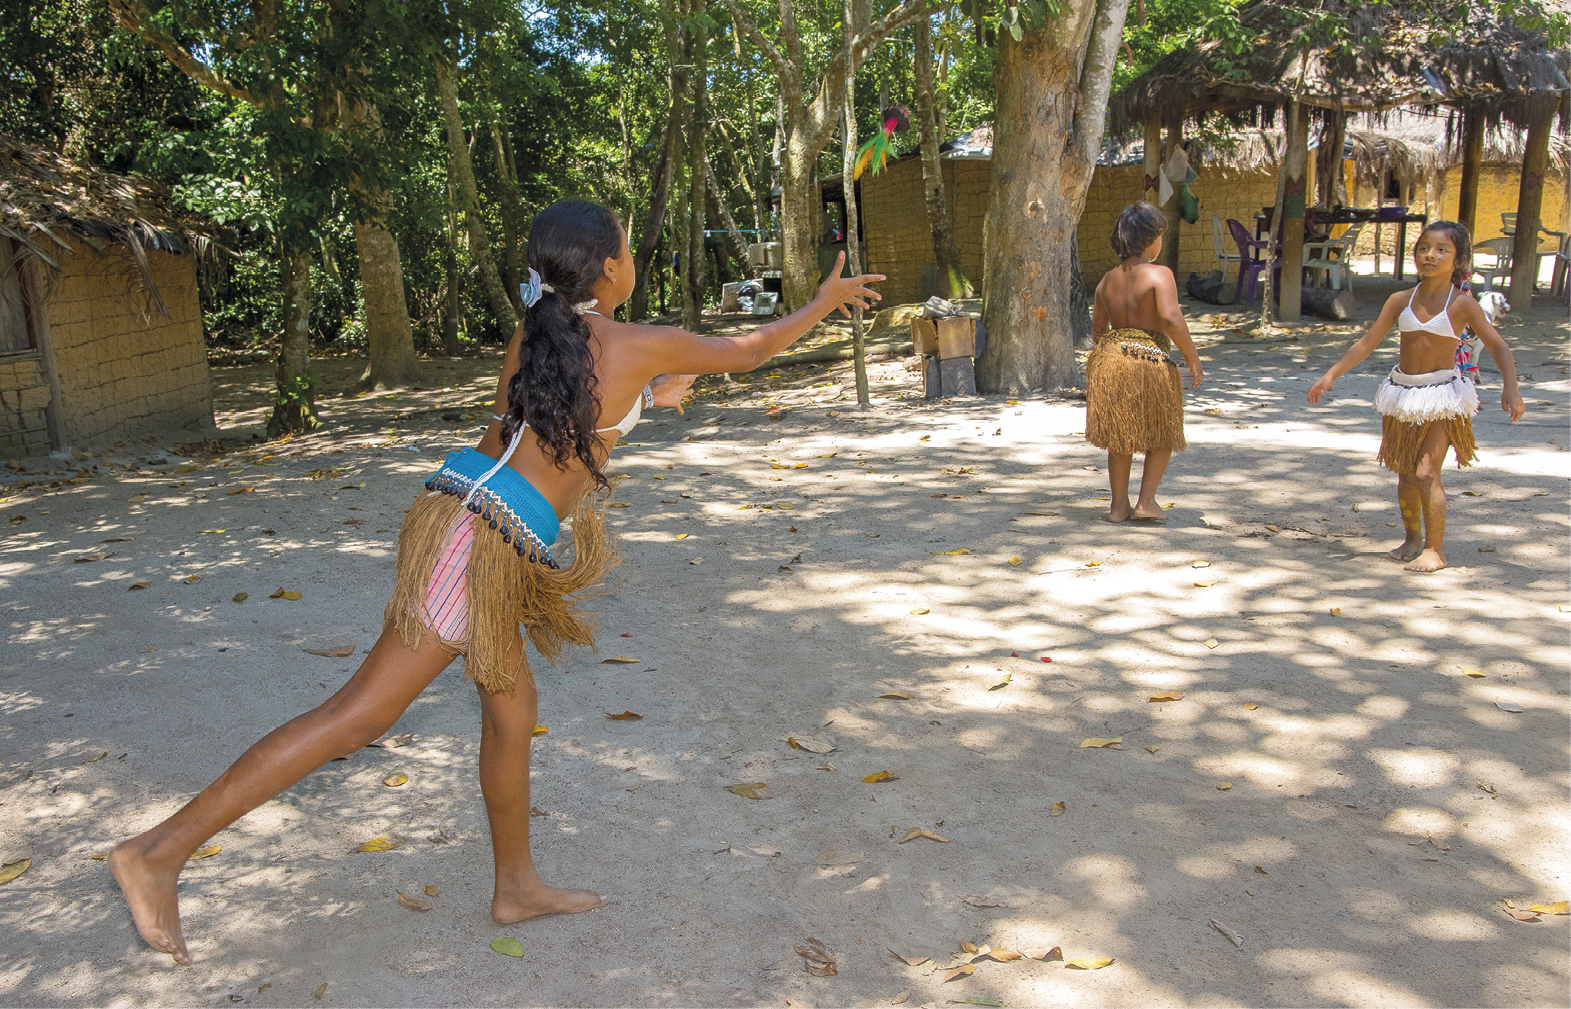 Fotografia. Duas crianças indígenas brincam de peteca em um pátio, enquanto outra aparece mais ao fundo. O chão é de terra batida. Em segundo plano, há construções entre árvores com paredes de pau a pique.